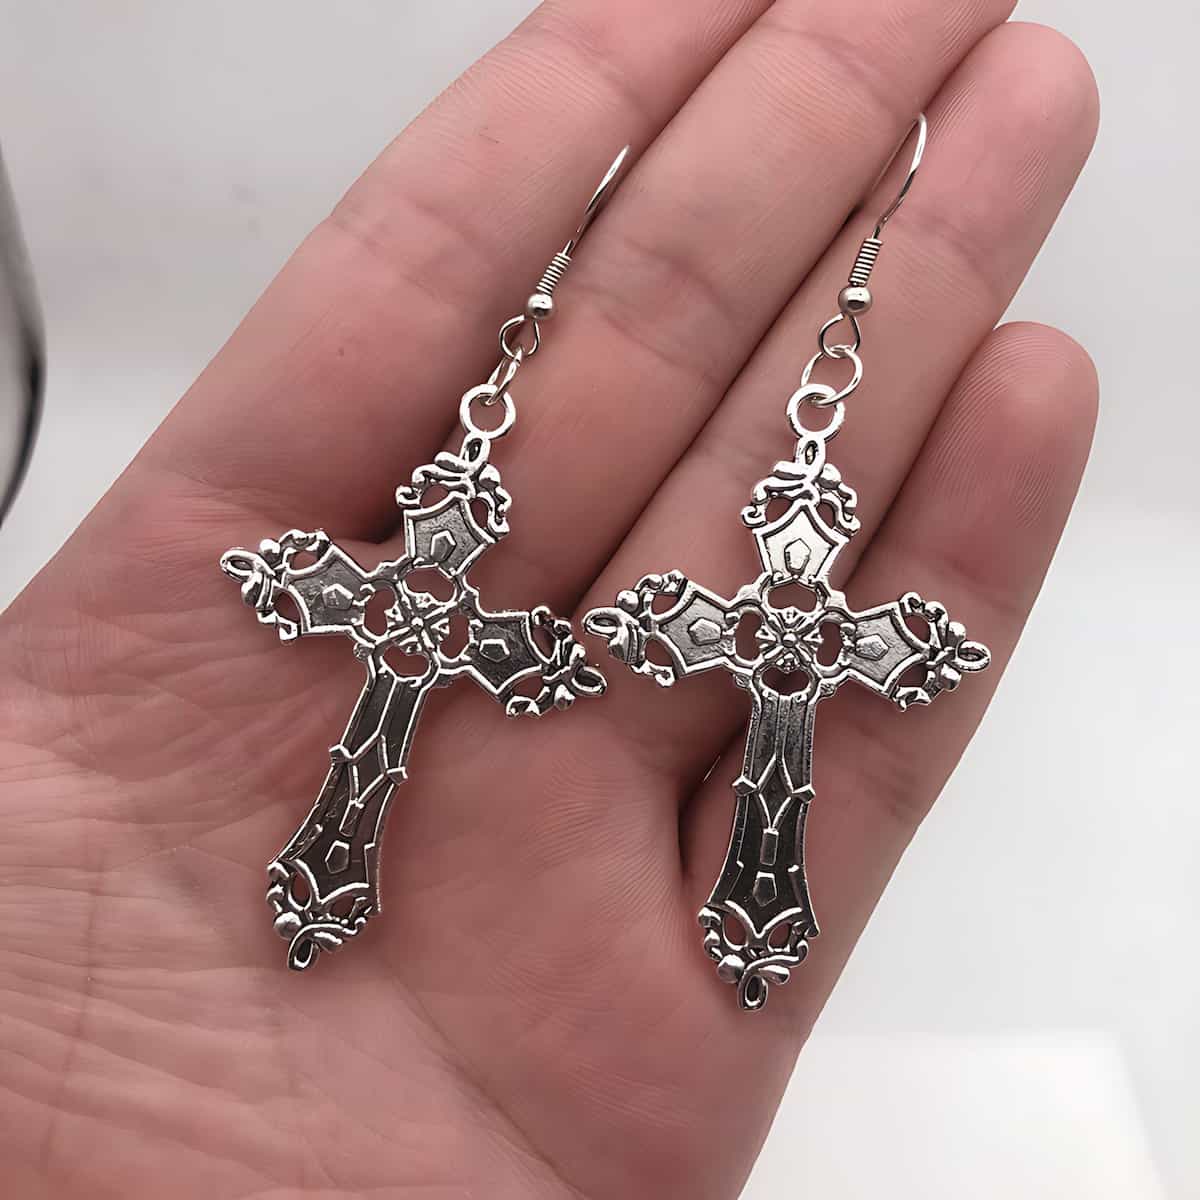 Big Cross Earrings - Xenos Jewelry